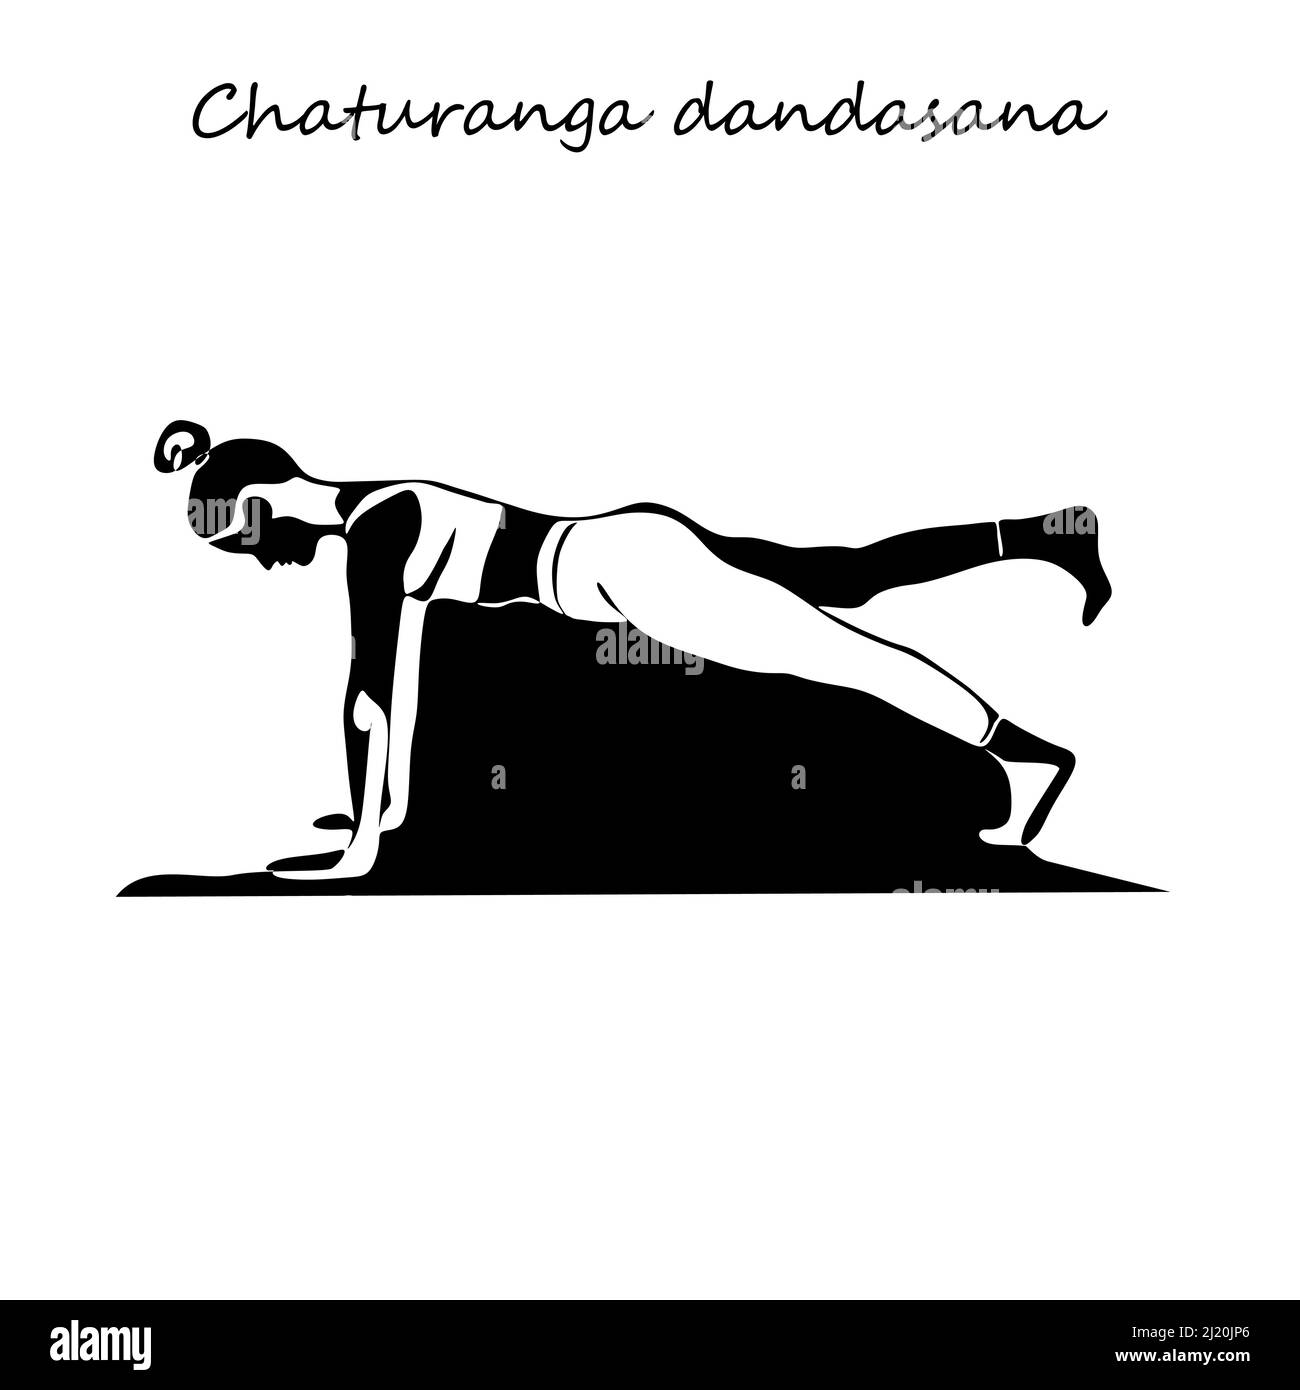 Chaturanga Dandasana Stock Photo by ©nanka-photo 22567331